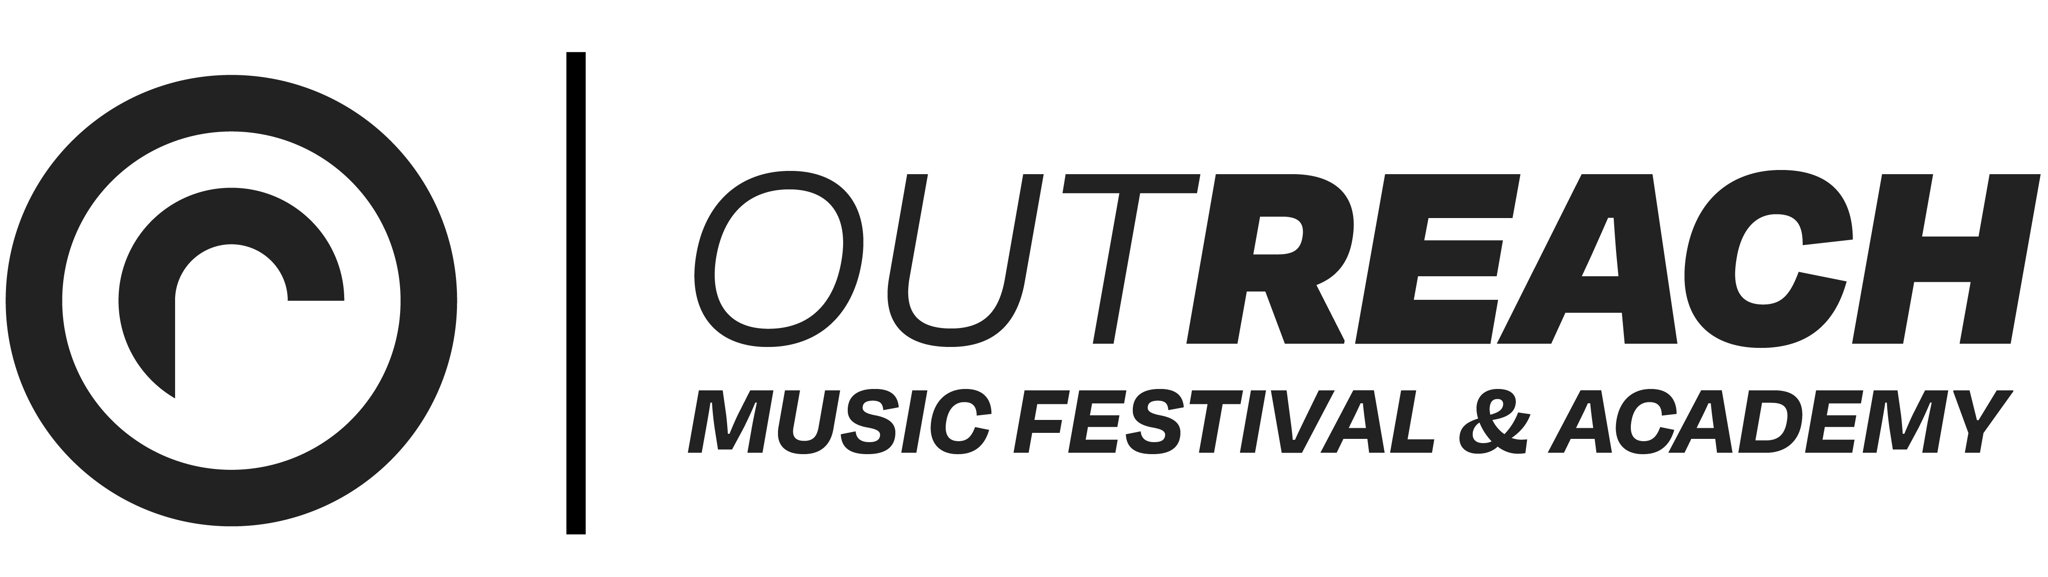 Outreach Music Festival & Academy 